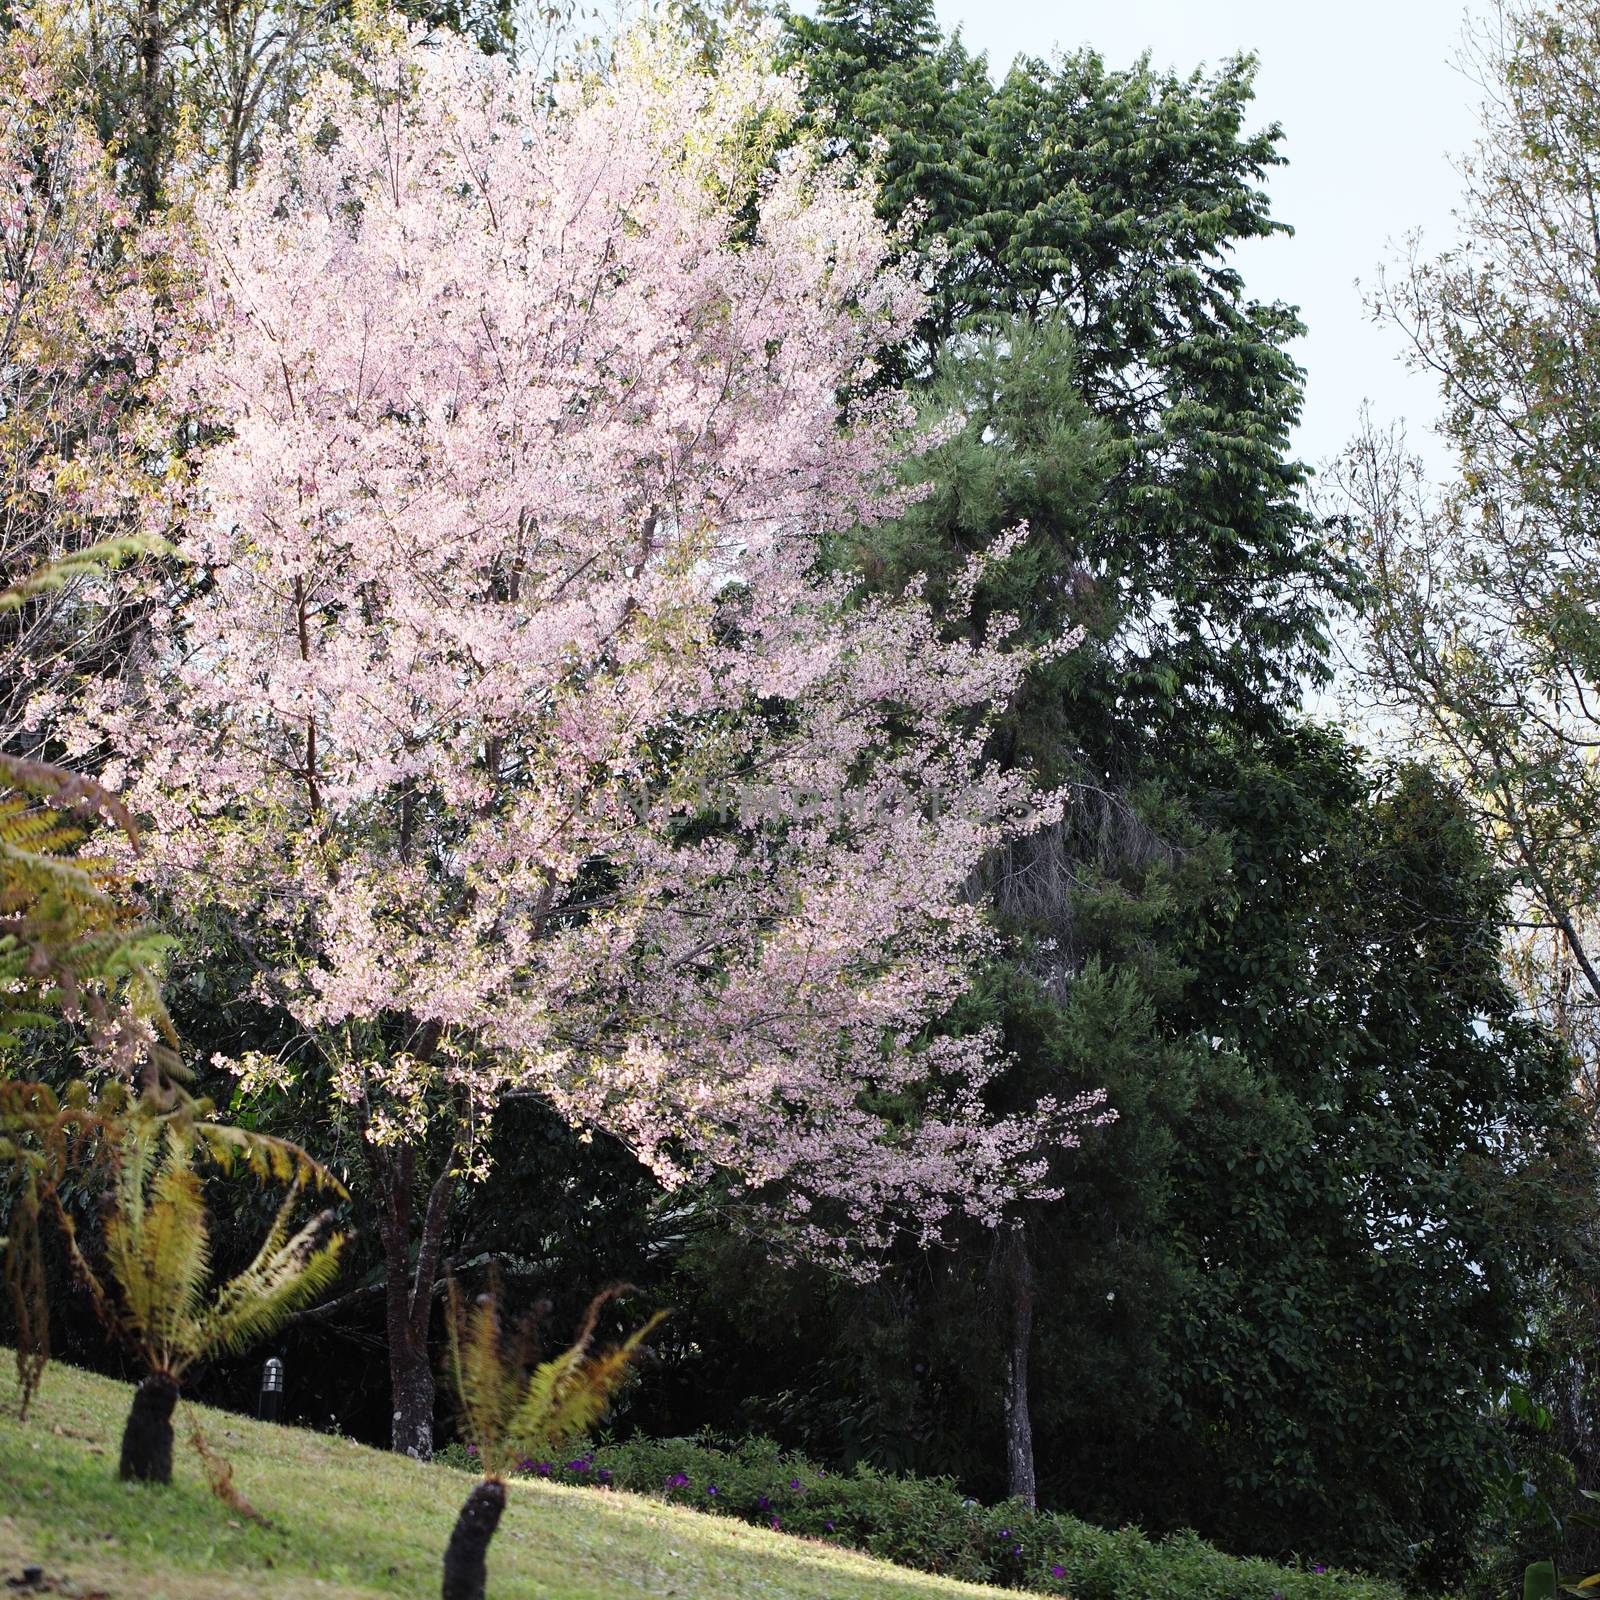 sakura cherry blossom flowers